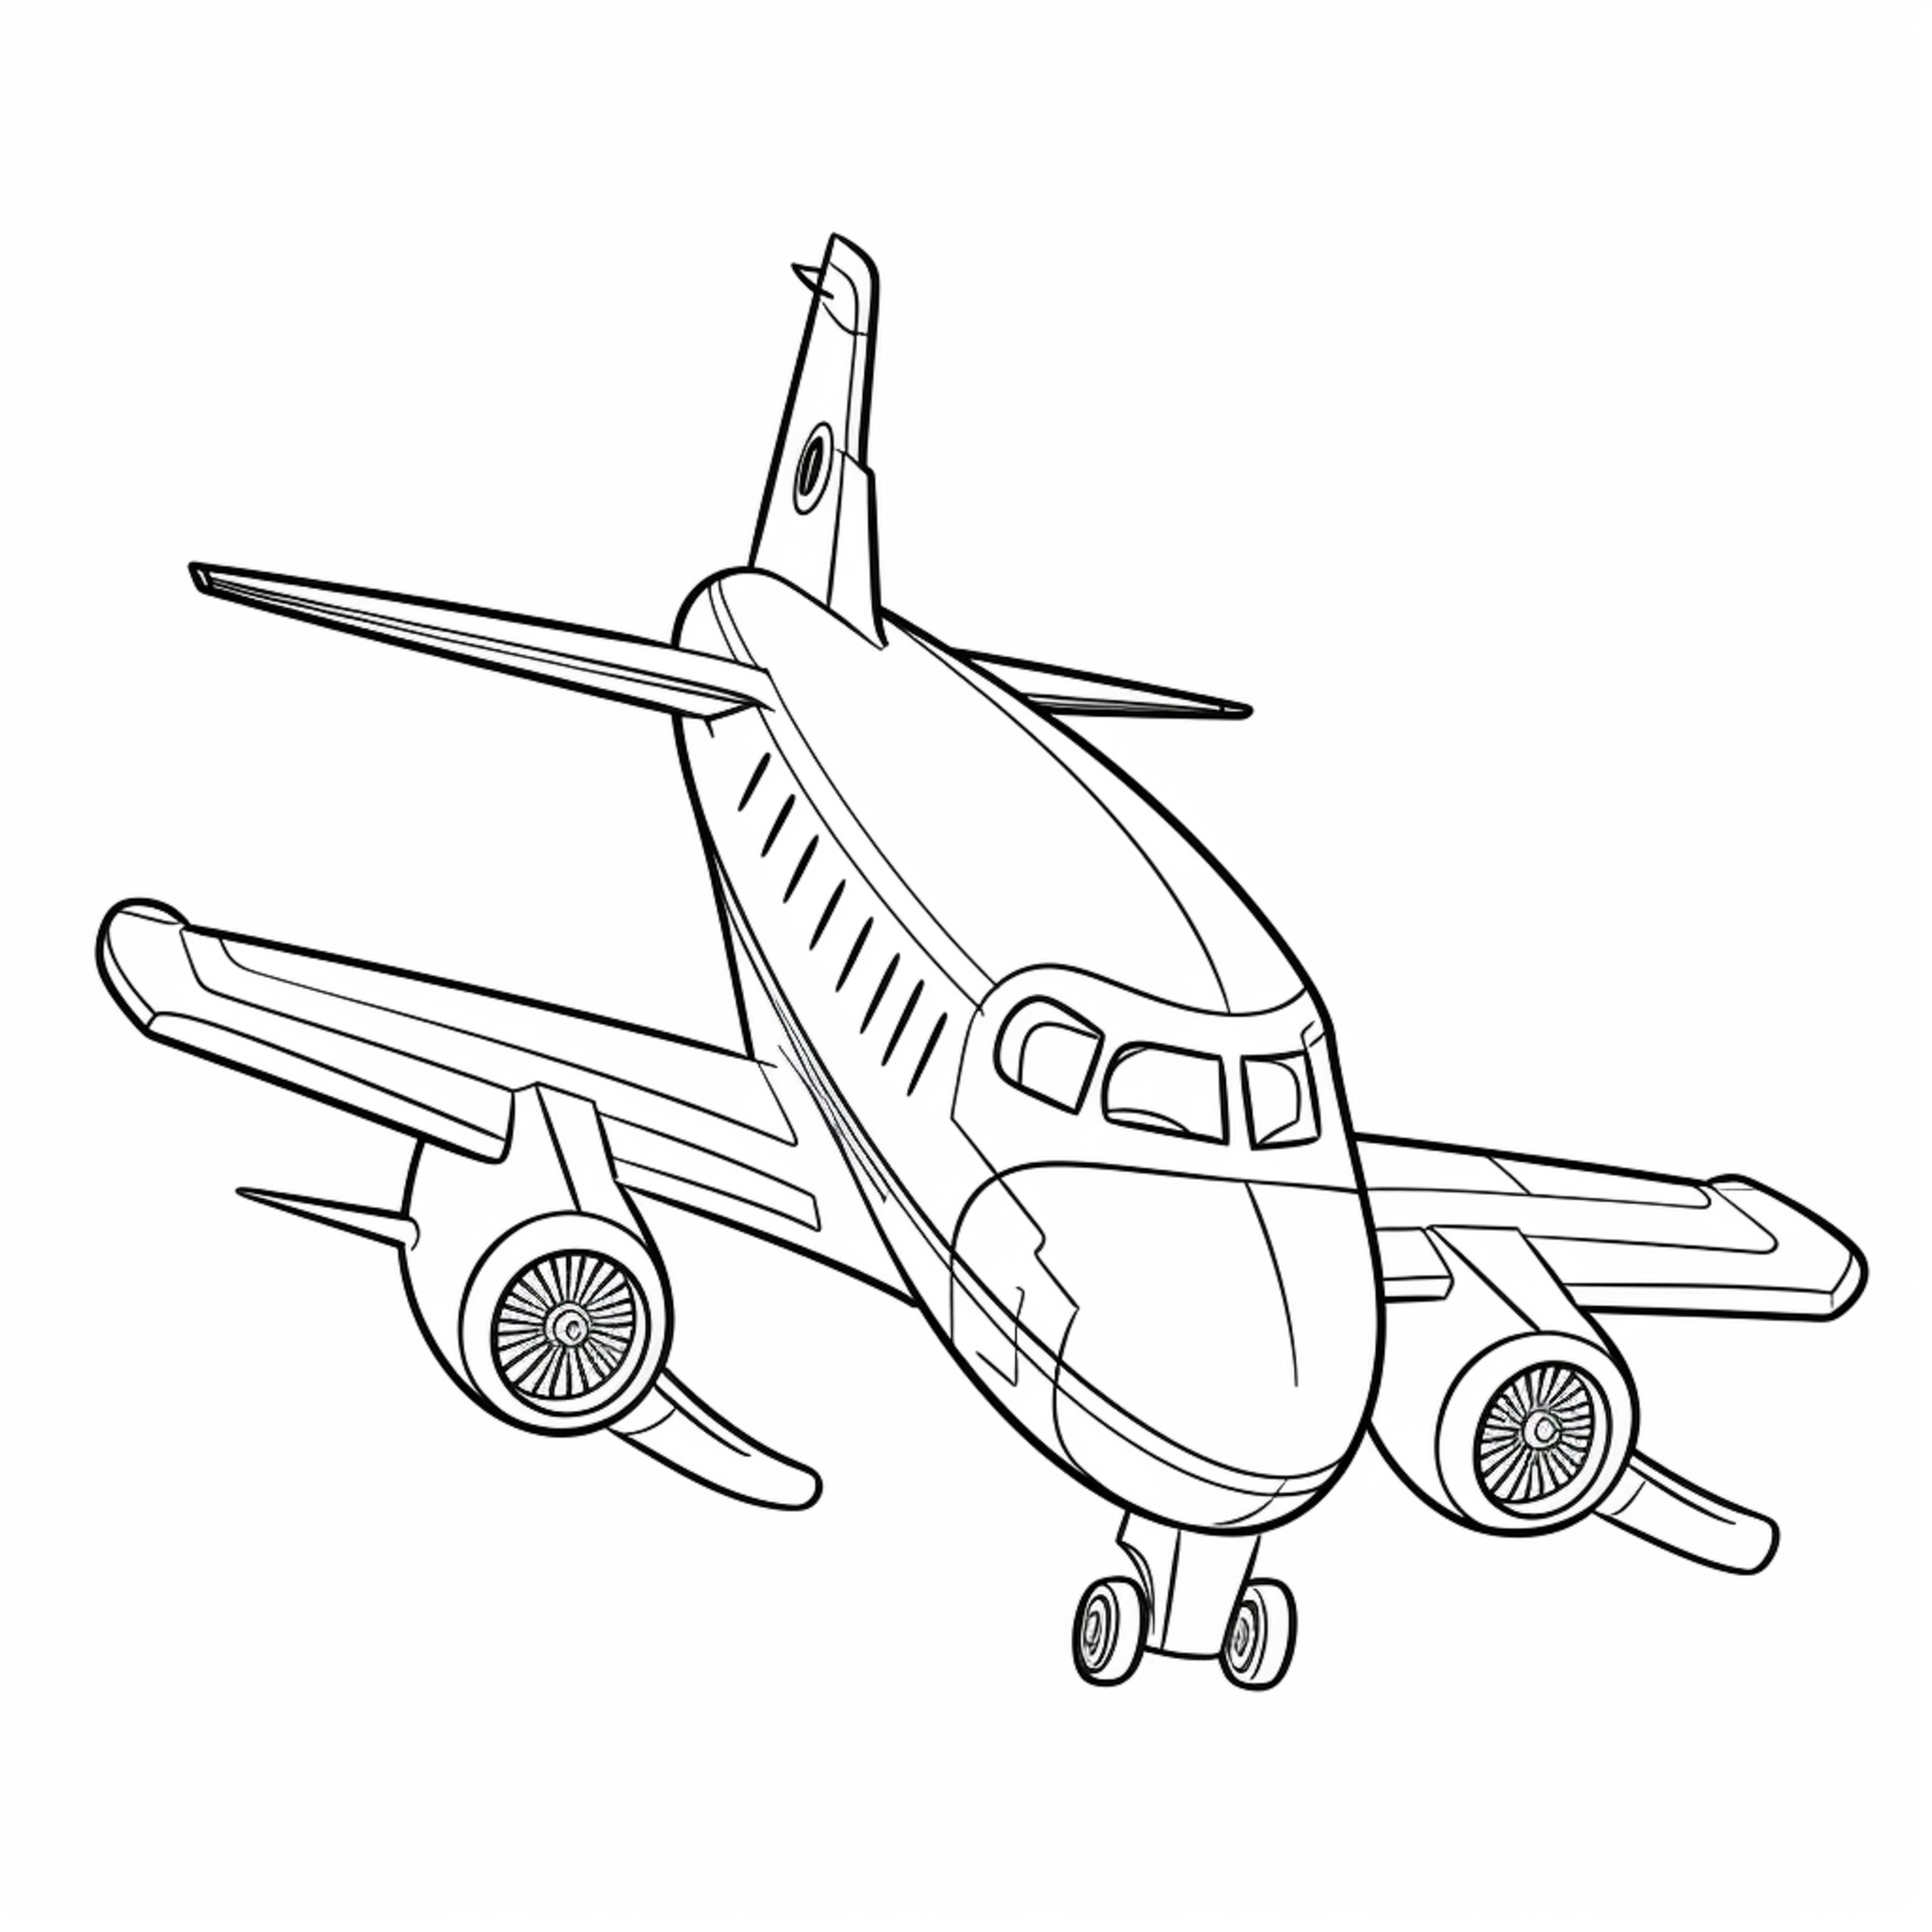 Раскраска самолет «Крылатая птица» формата А4 в высоком качестве